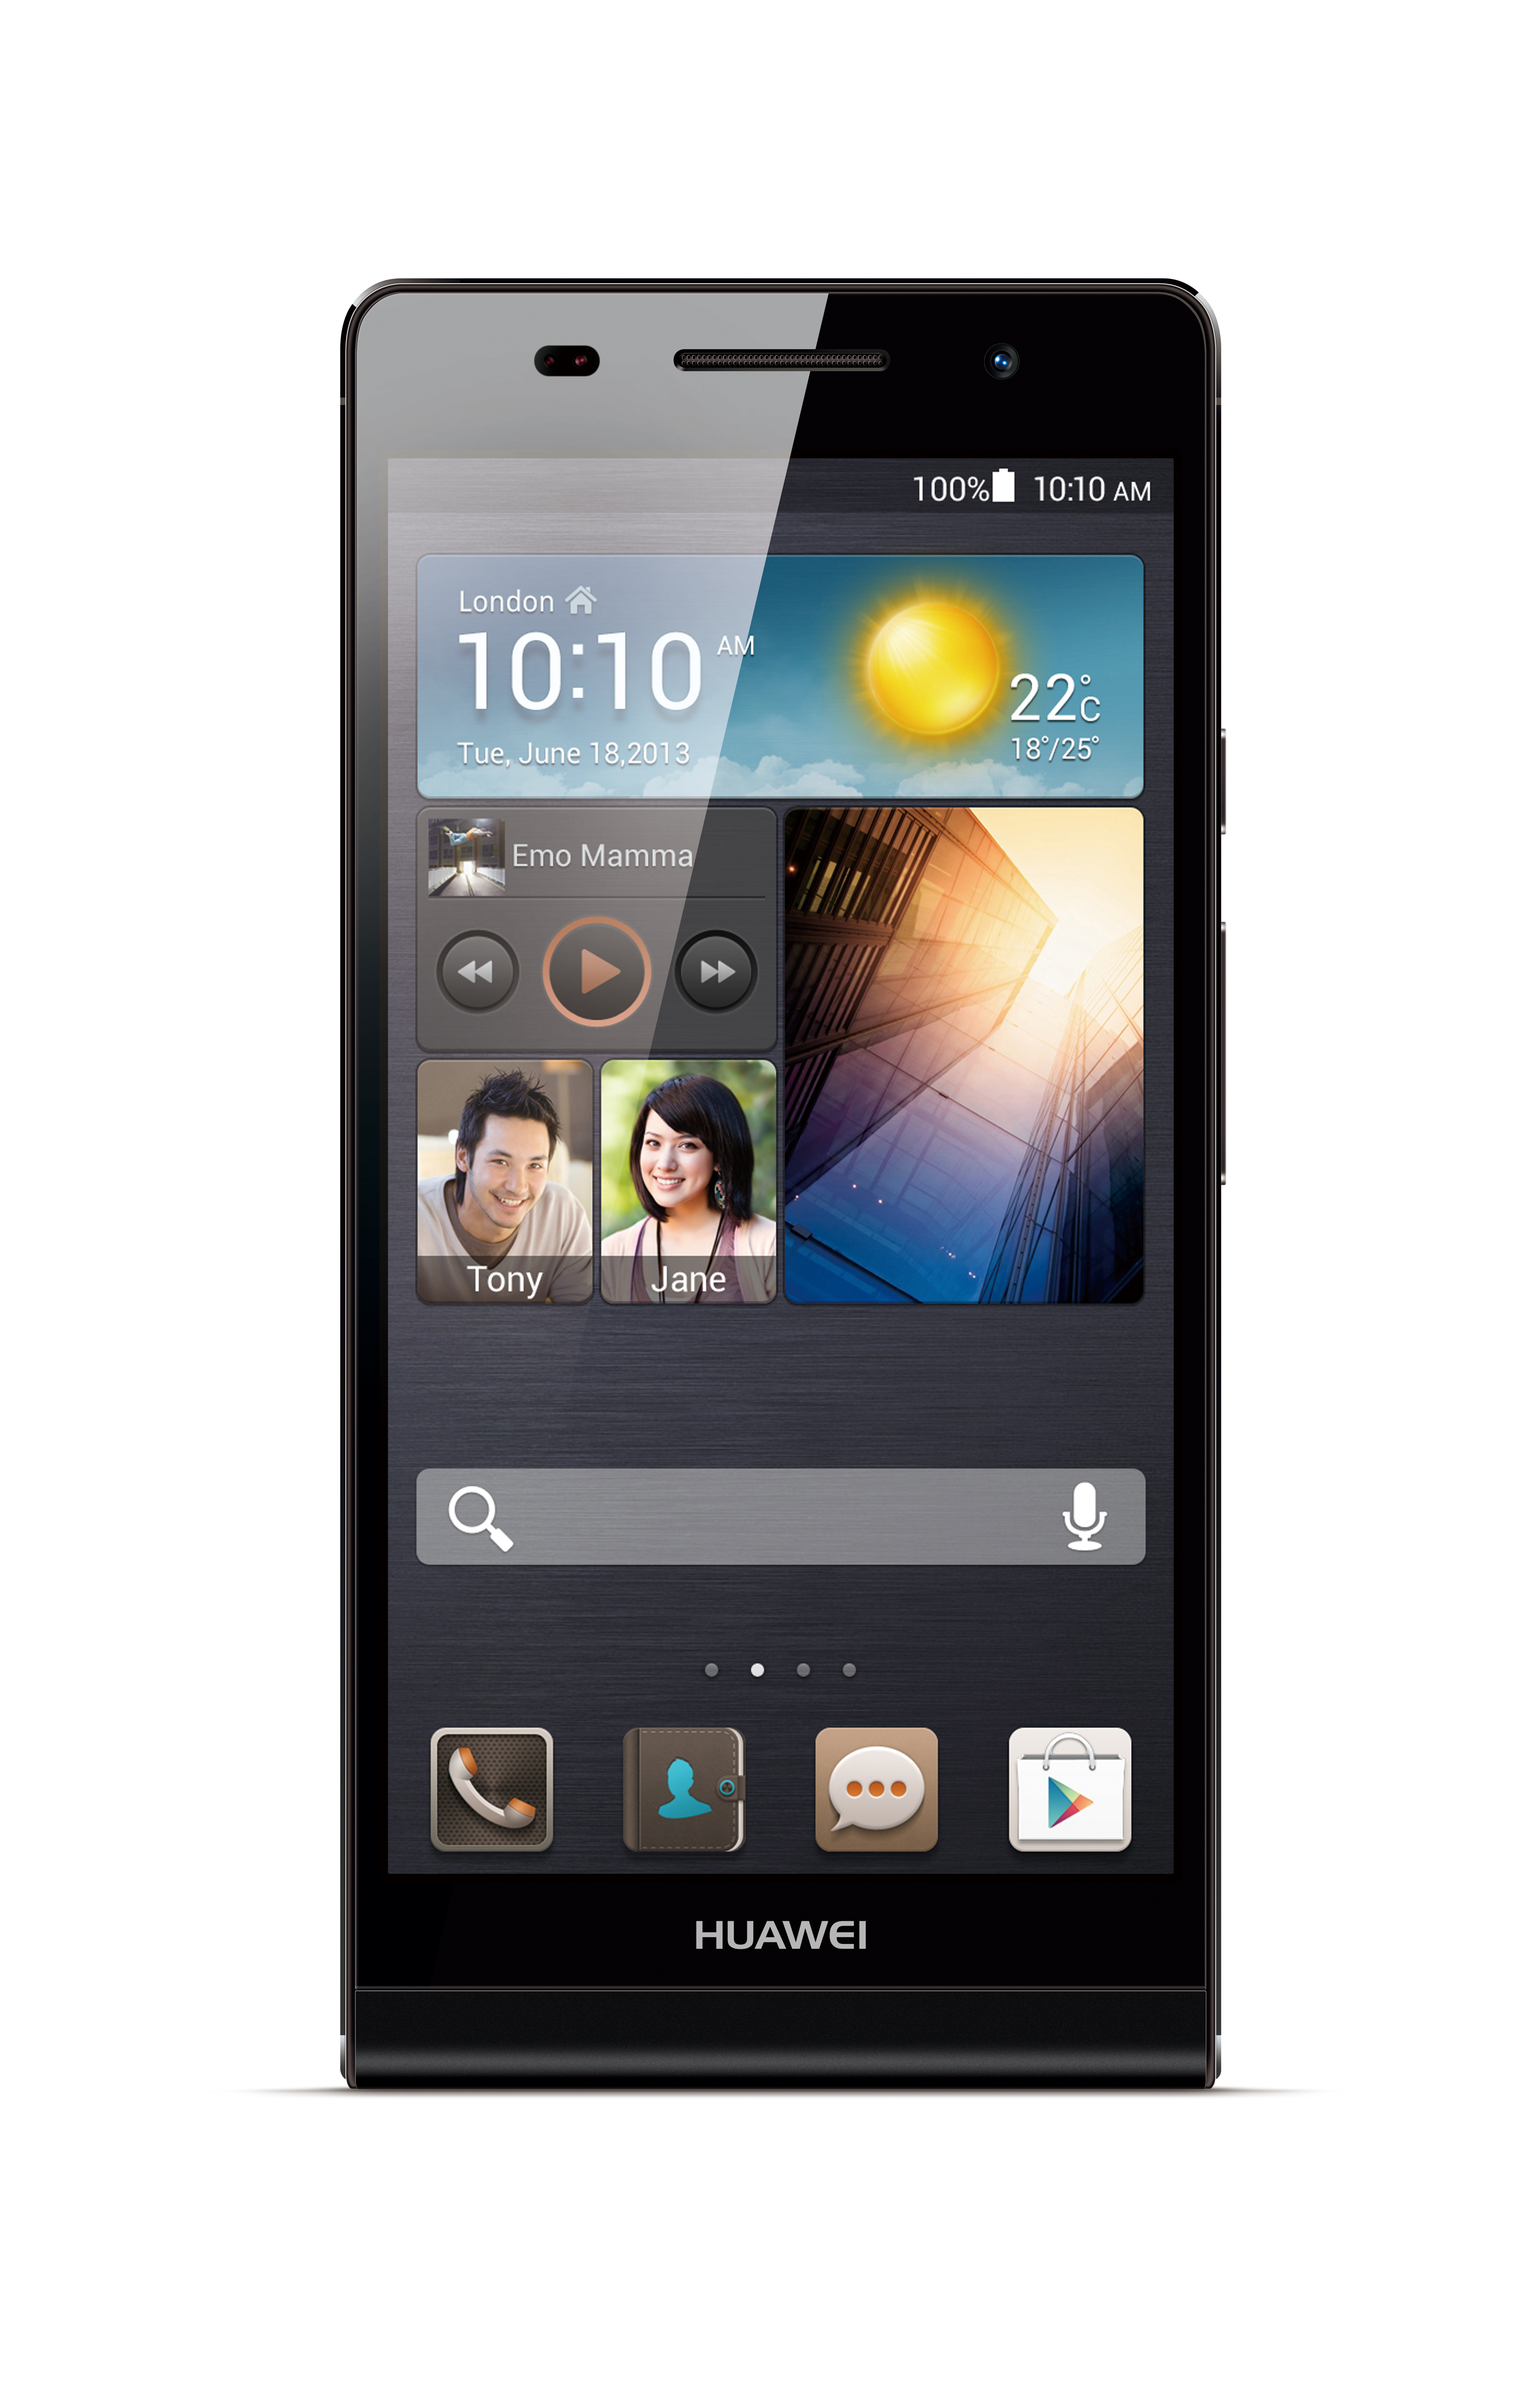 Huawei G6608 Facebook Download